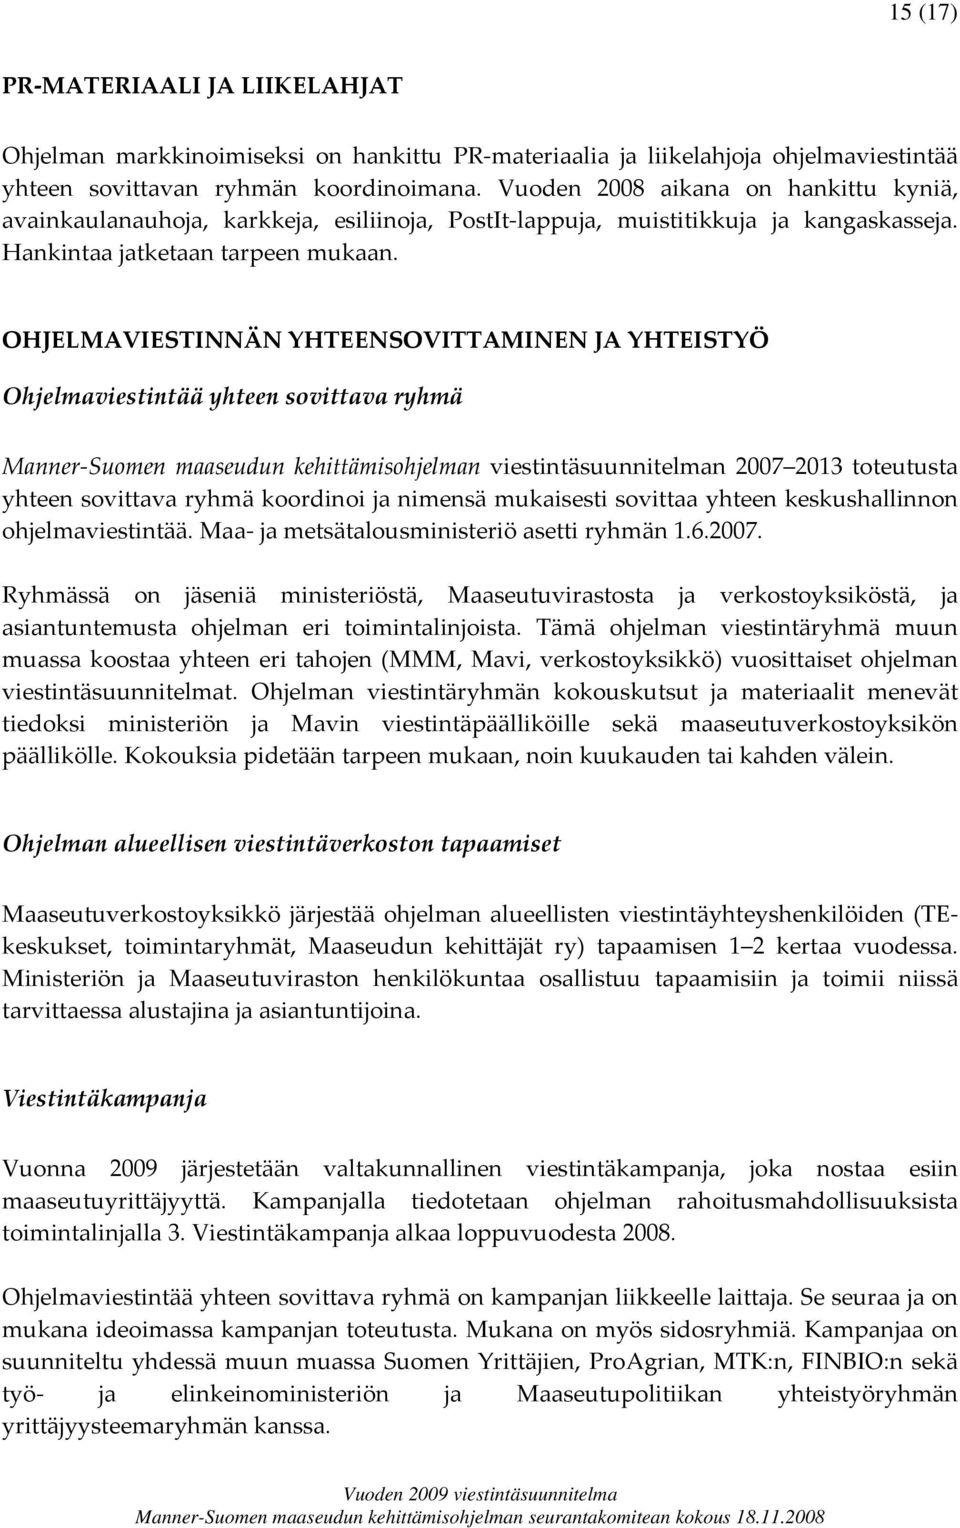 OHJELMAVIESTINNÄN YHTEENSOVITTAMINEN JA YHTEISTYÖ Ohjelmaviestintää yhteen sovittava ryhmä Manner Suomen maaseudun kehittämisohjelman viestintäsuunnitelman 2007 2013 toteutusta yhteen sovittava ryhmä